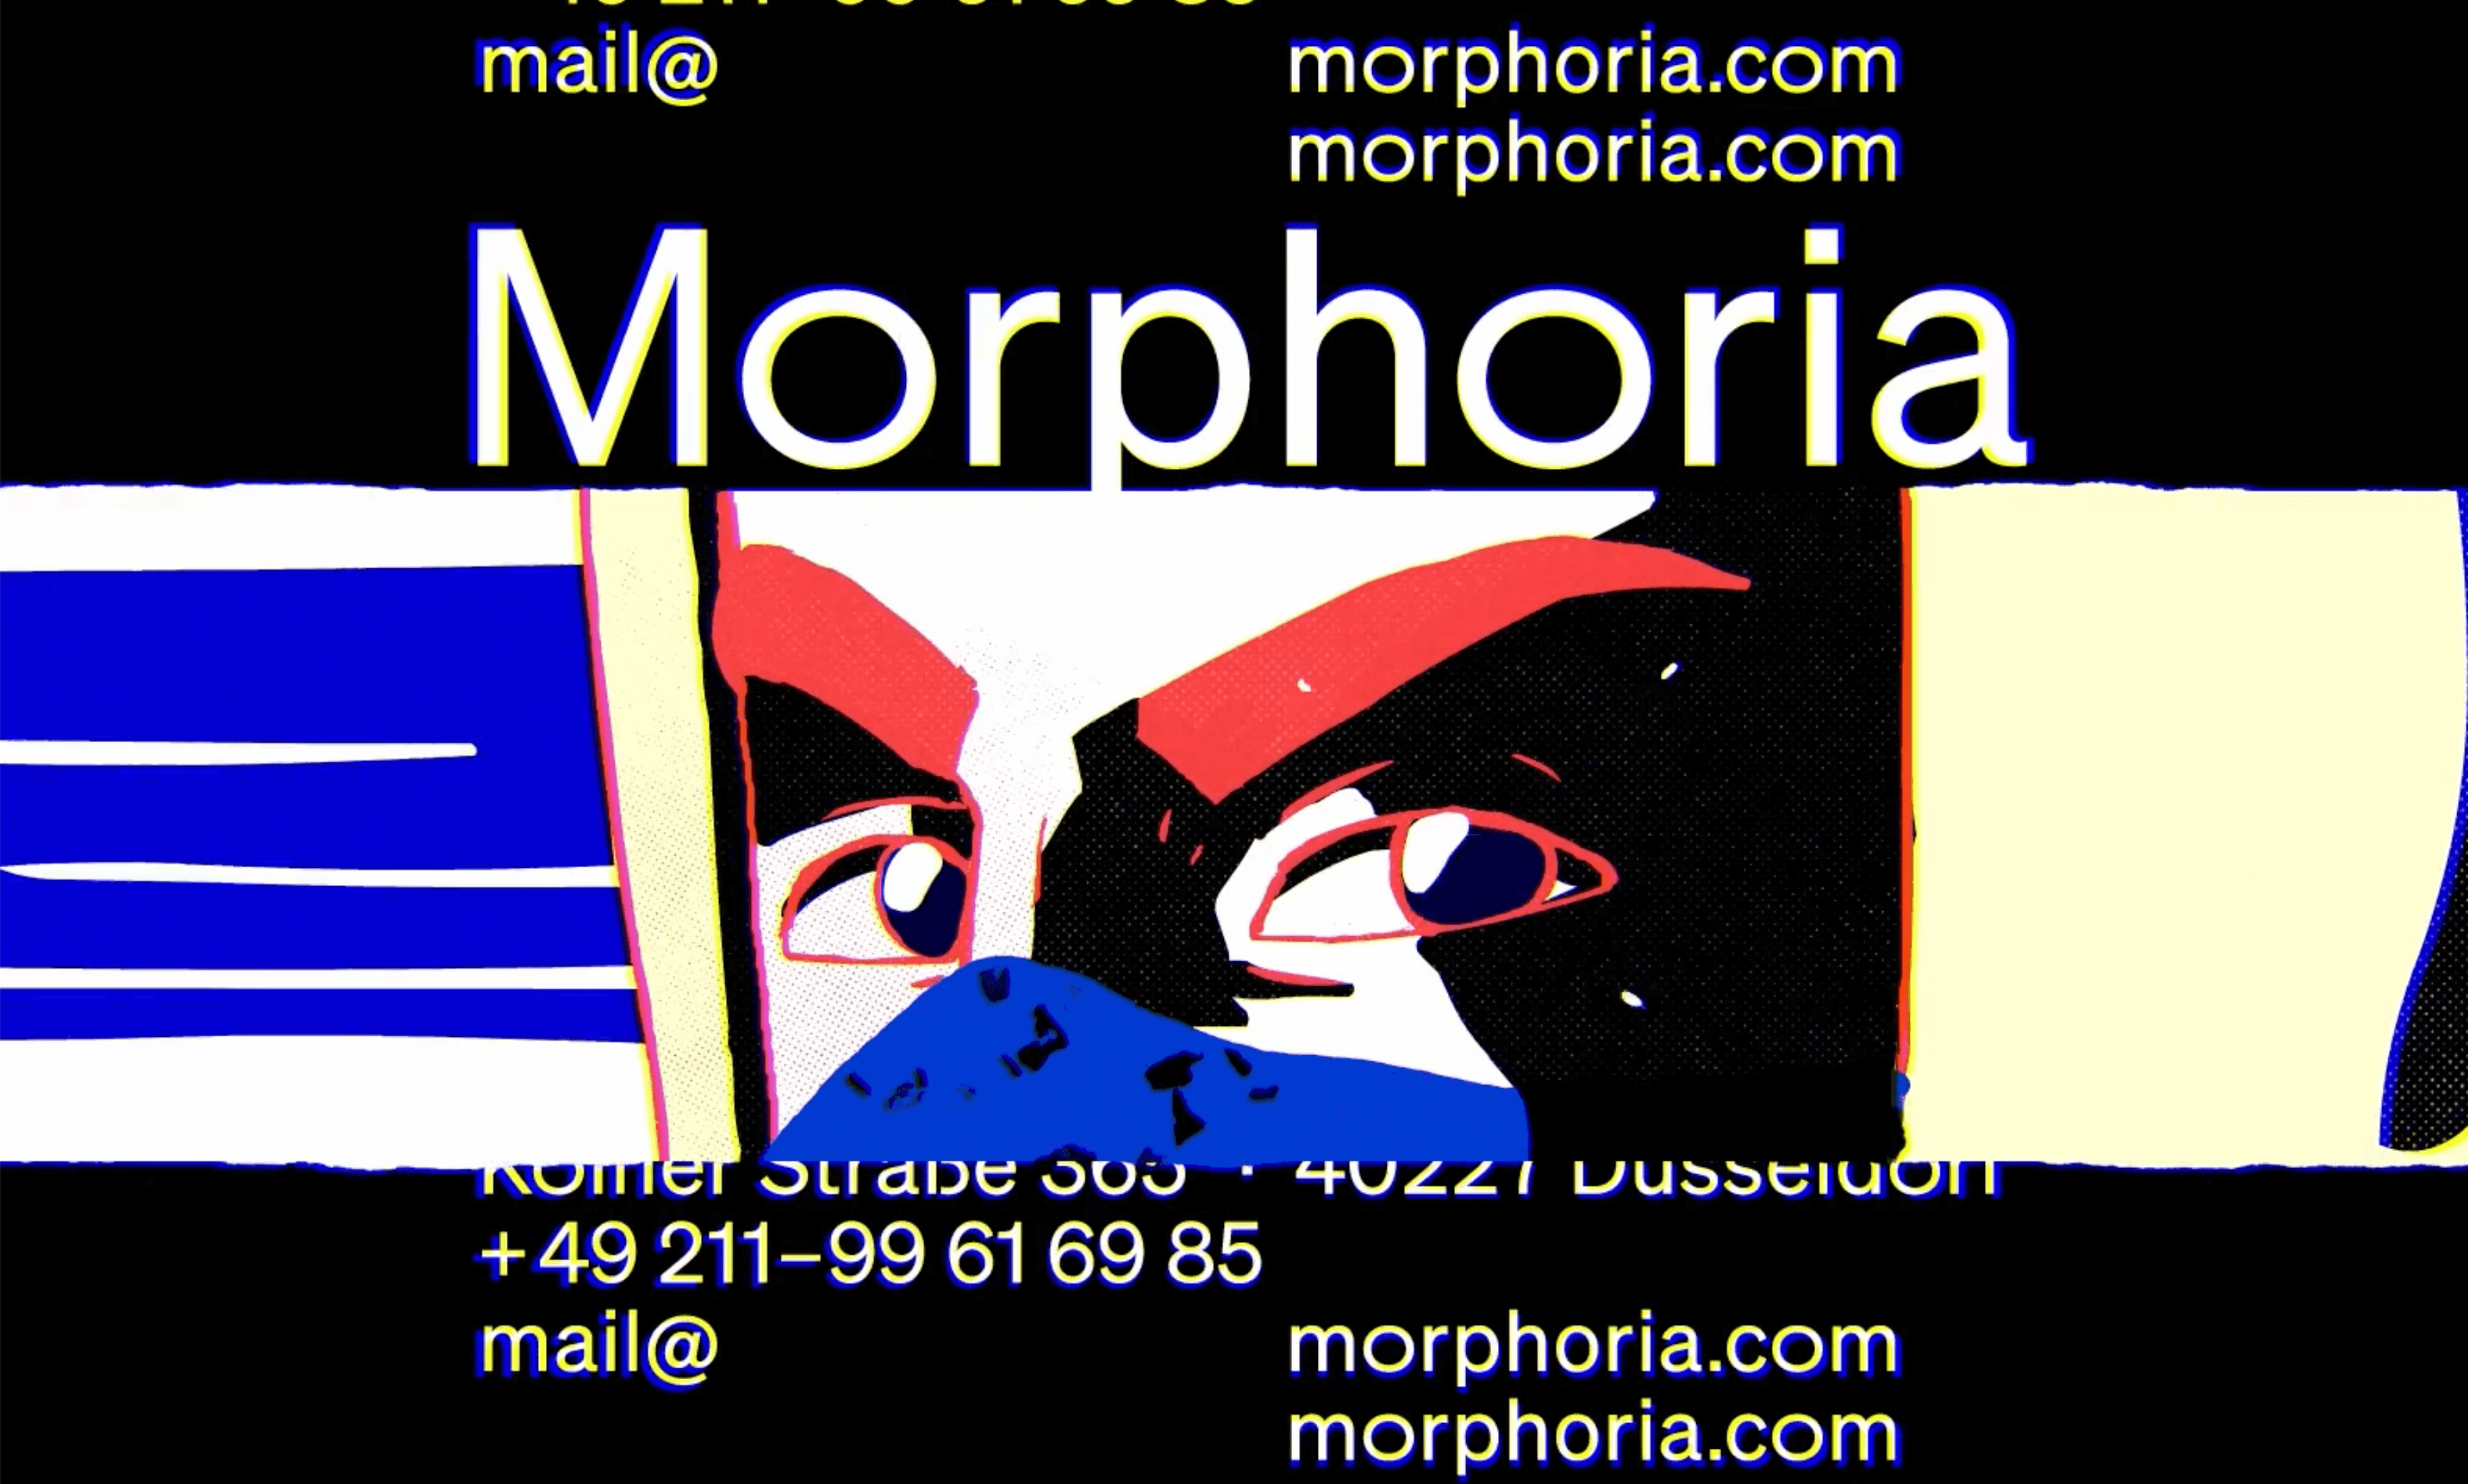 (c) Morphoria.com